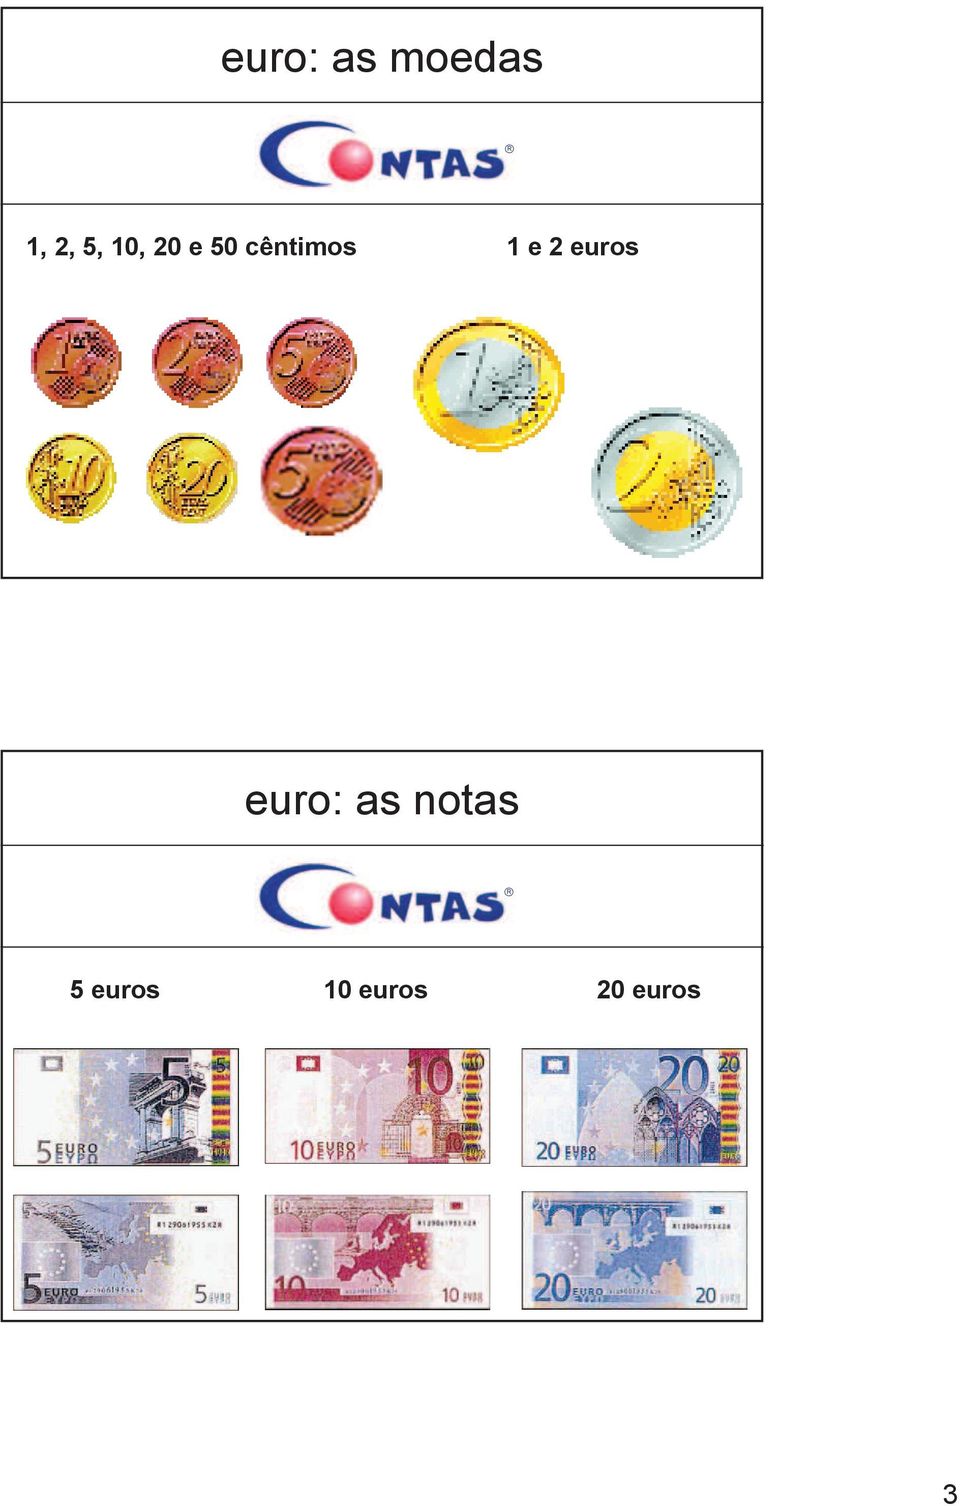 2 euros euro: as notas 5